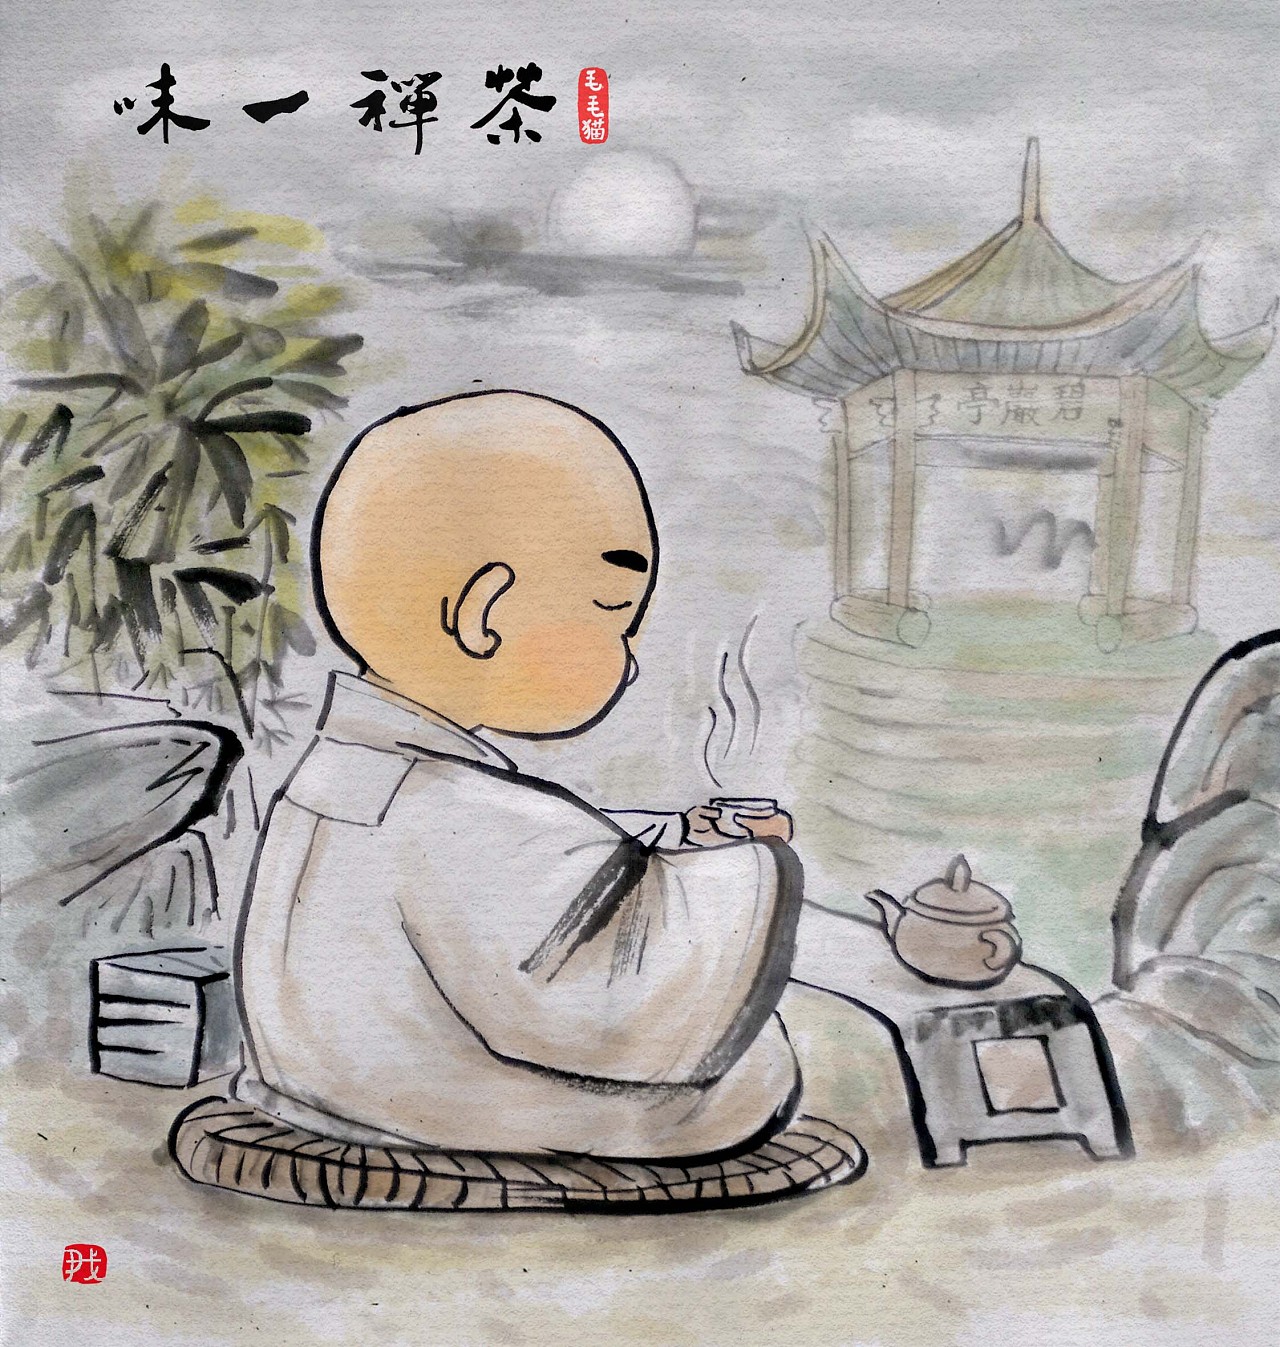 "茶禅一味"为某禅茶文化论坛画的两幅画.